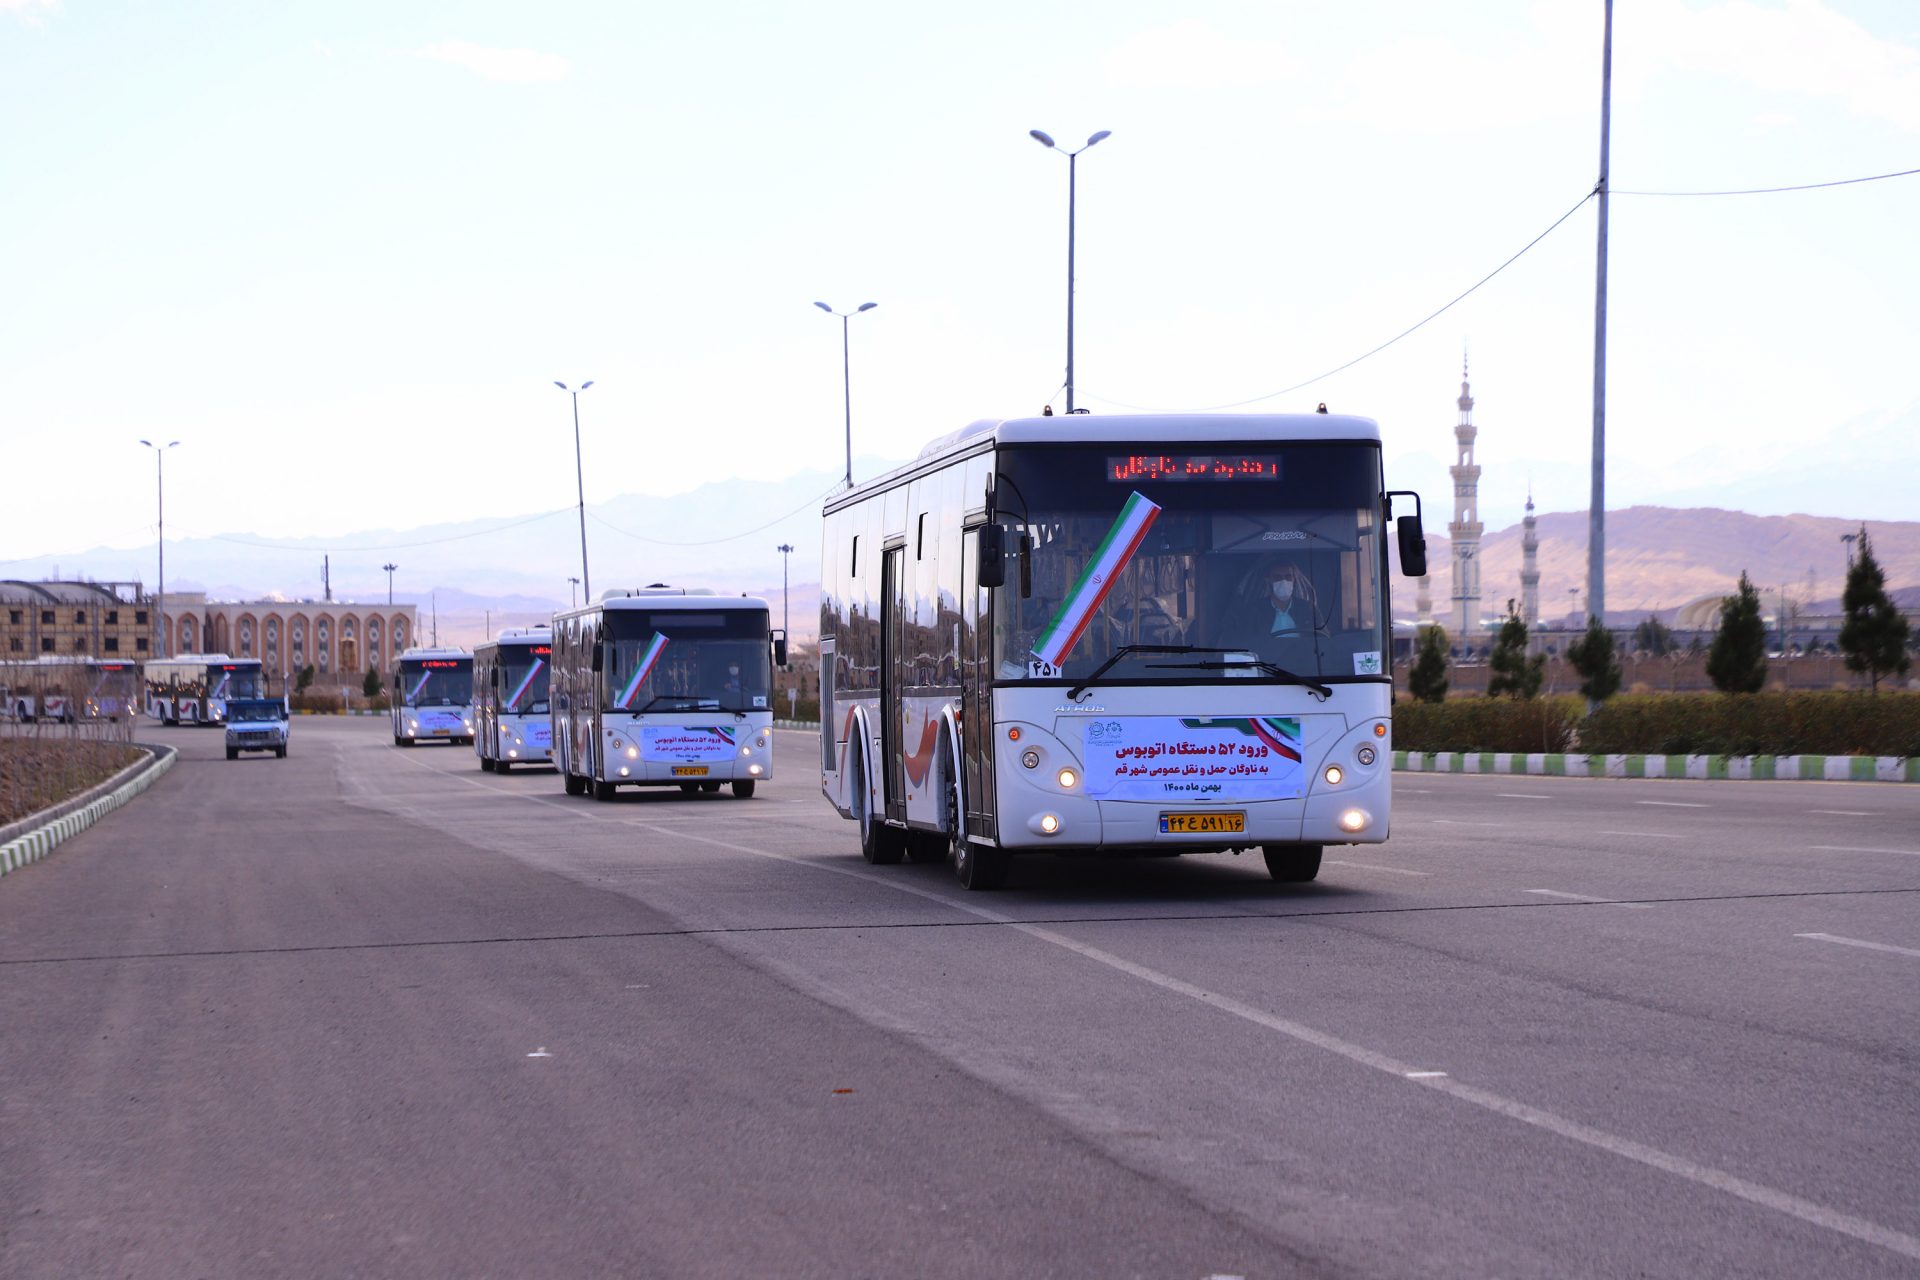 ۱۰۰ دستگاه اتوبوس جدید به ناوگان اتوبوسرانی شهر قم اضافه می‌شود/جابه‌جایی بیش از ۹۵ هزار مسافر در روز با اتوبوس شهری